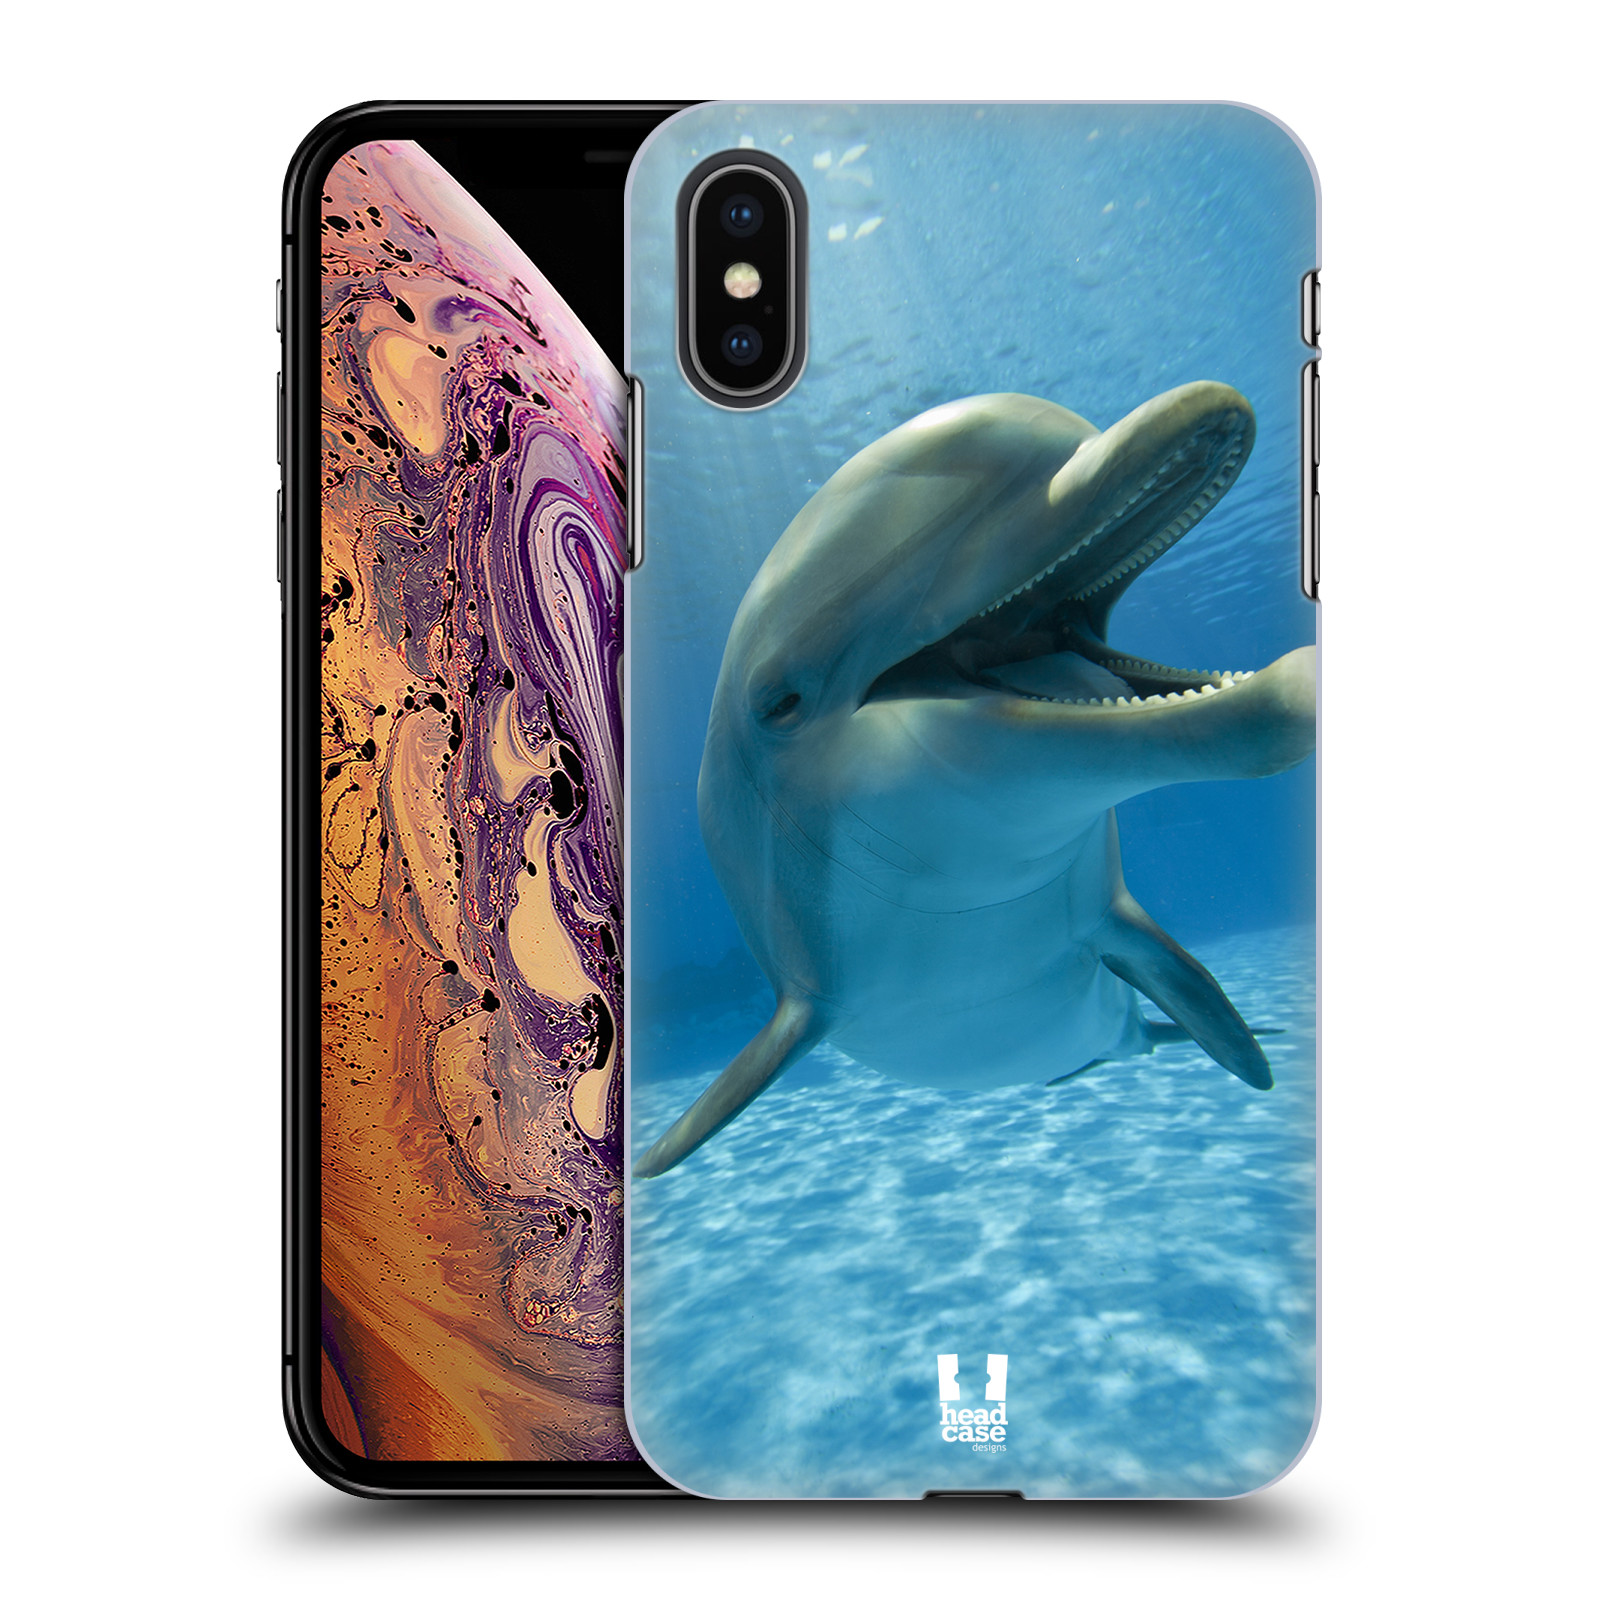 Zadní obal pro mobil Apple Iphone XS MAX - HEAD CASE - Svět zvířat delfín v moři